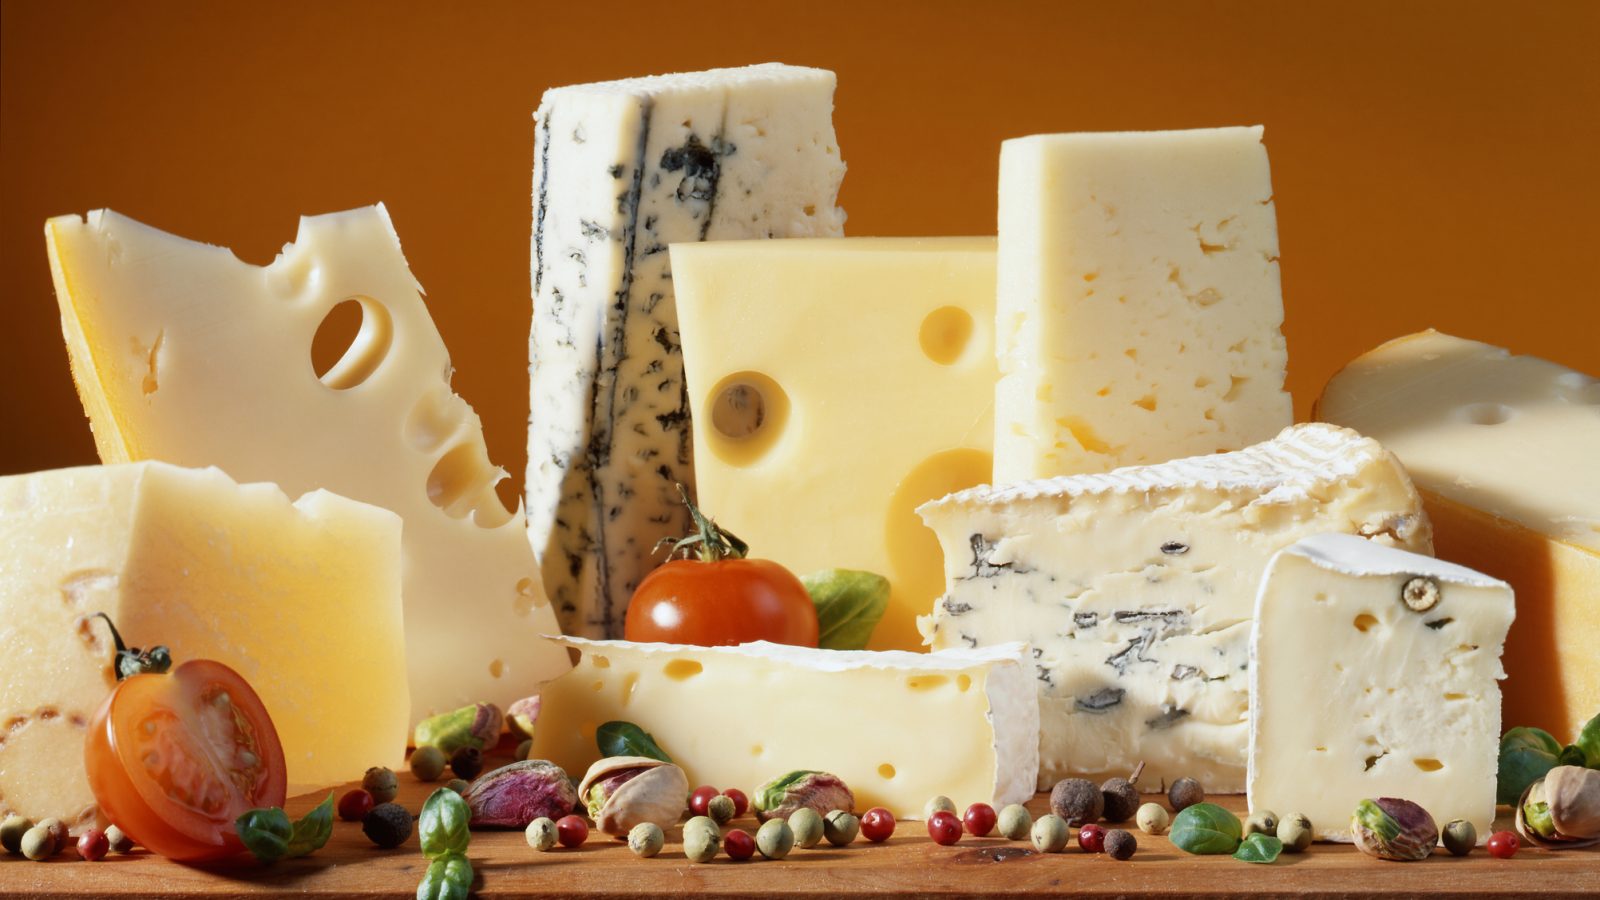 「チーズ大国」スイスが大量のチーズを輸入している理由 | スイス人の味の好みに変化？